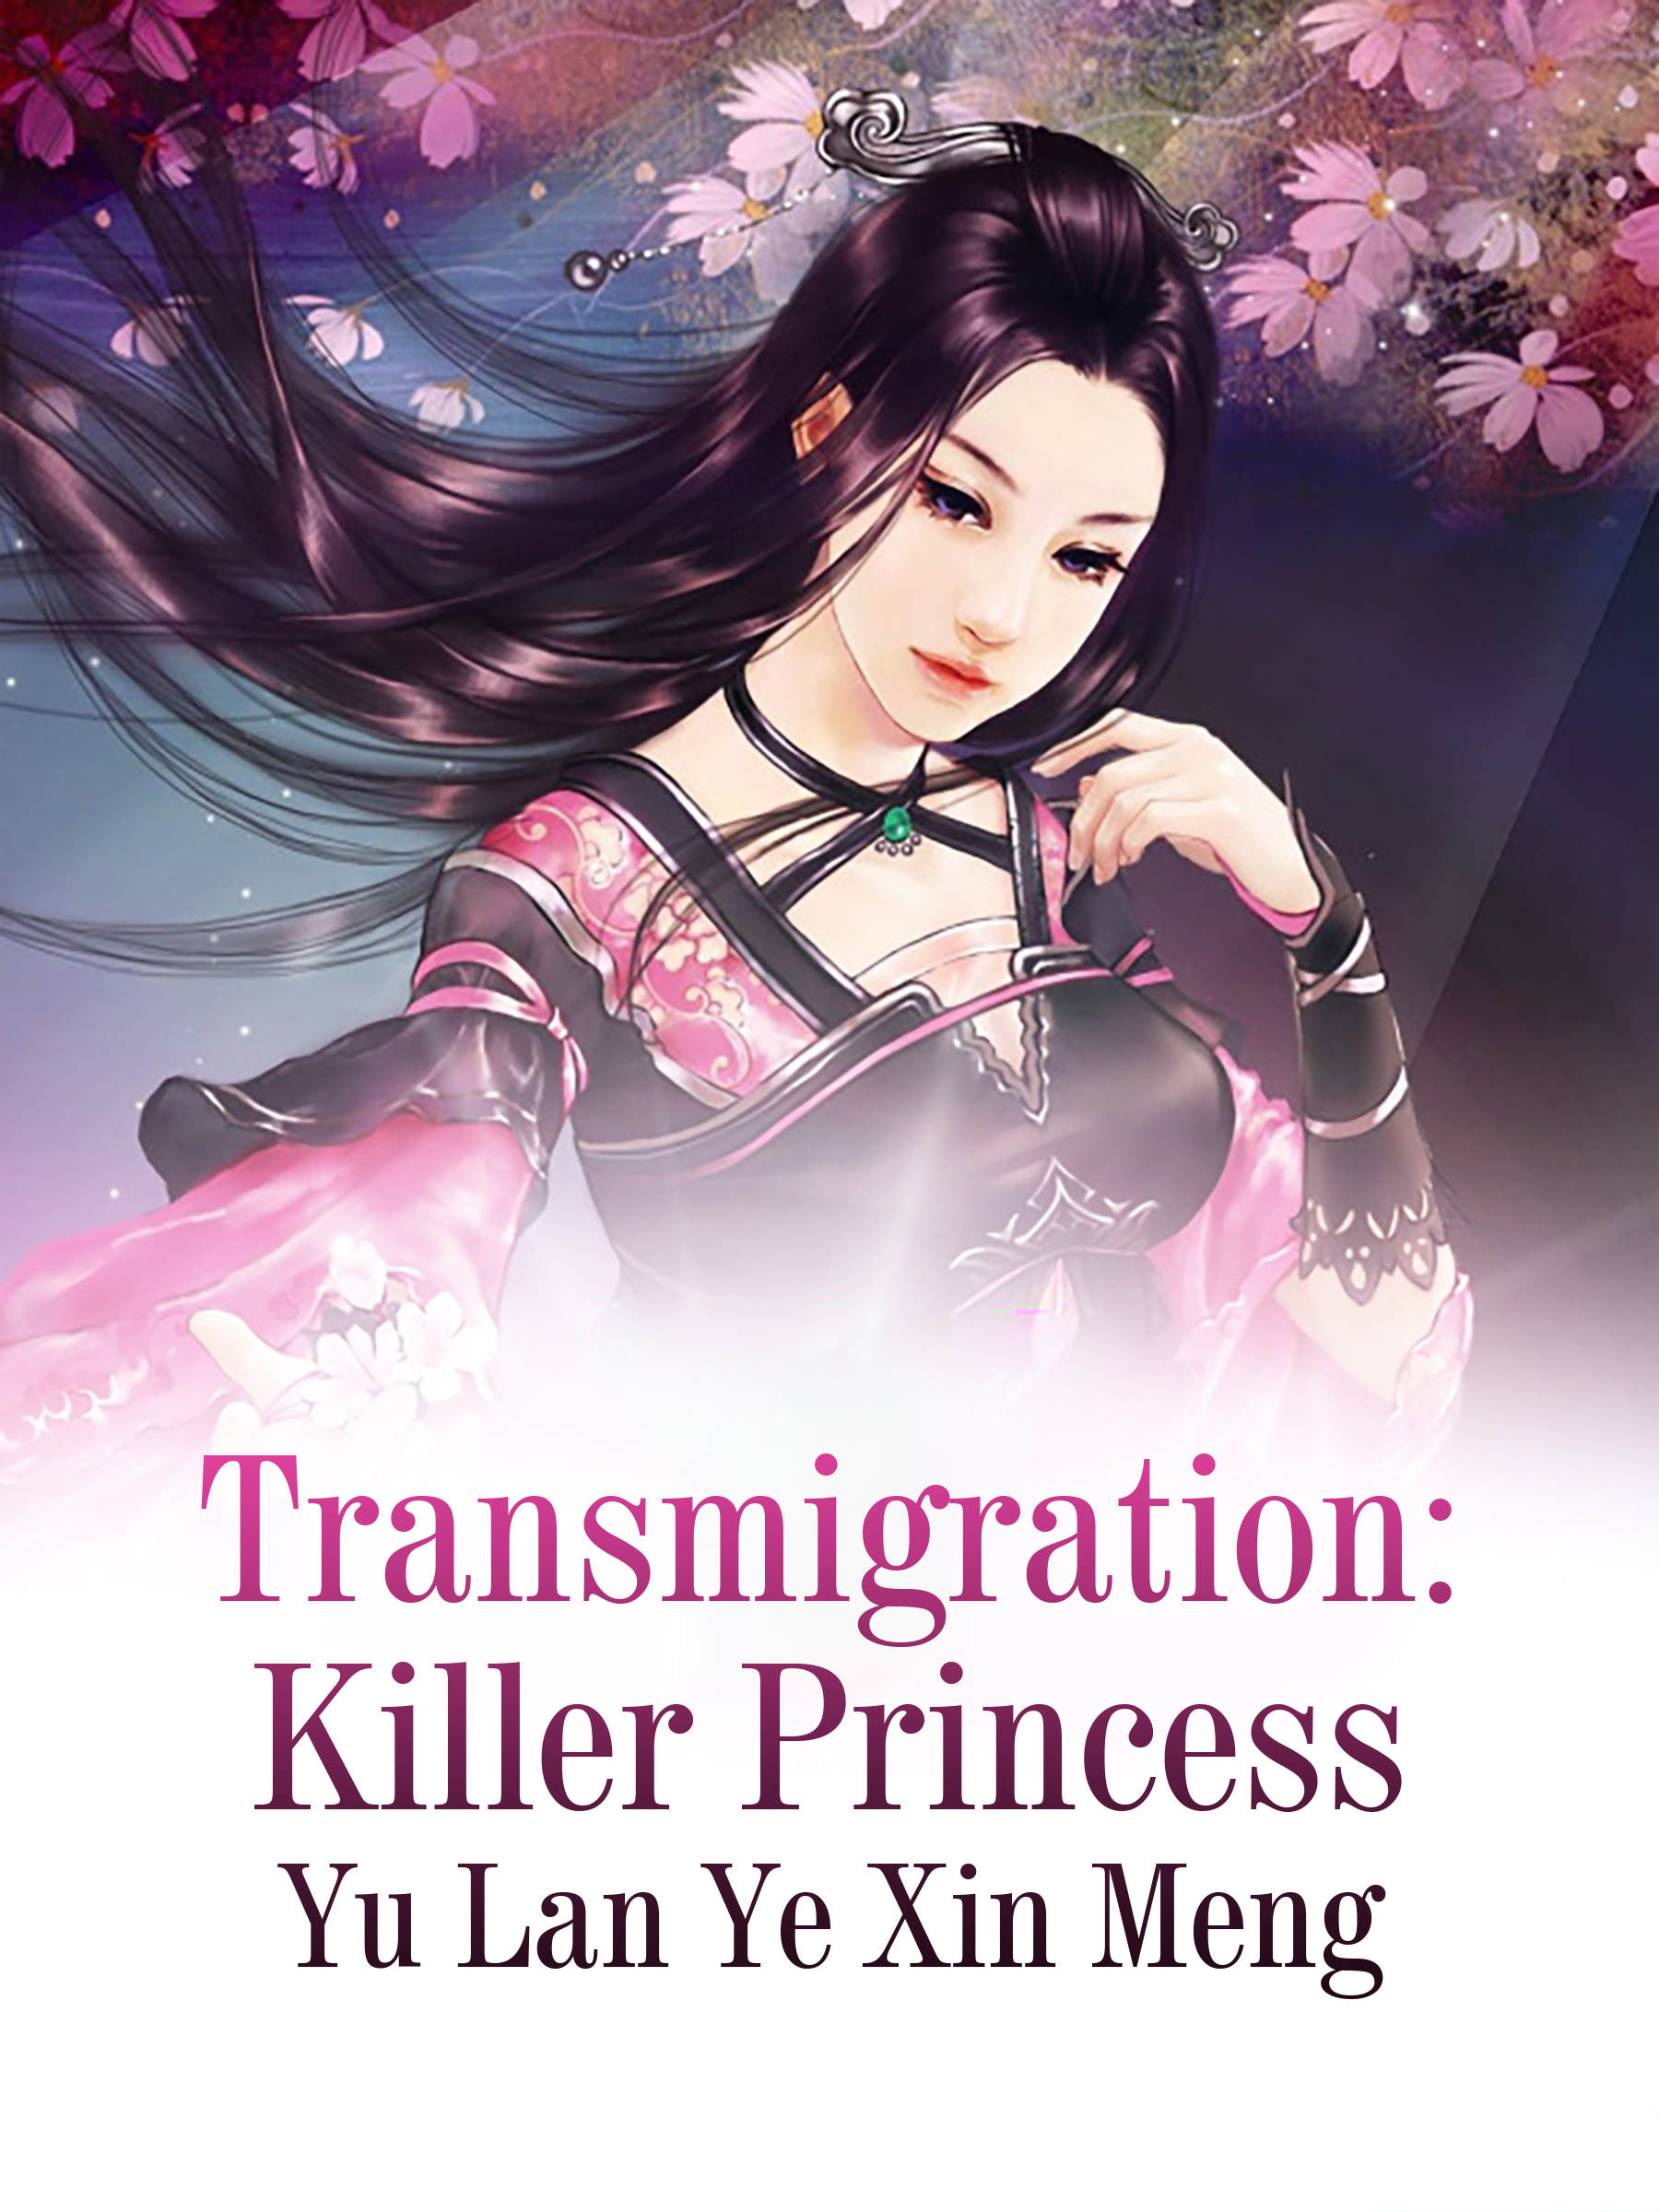 Transmigration: Killer Princess Novel Full Book - BabelNovel